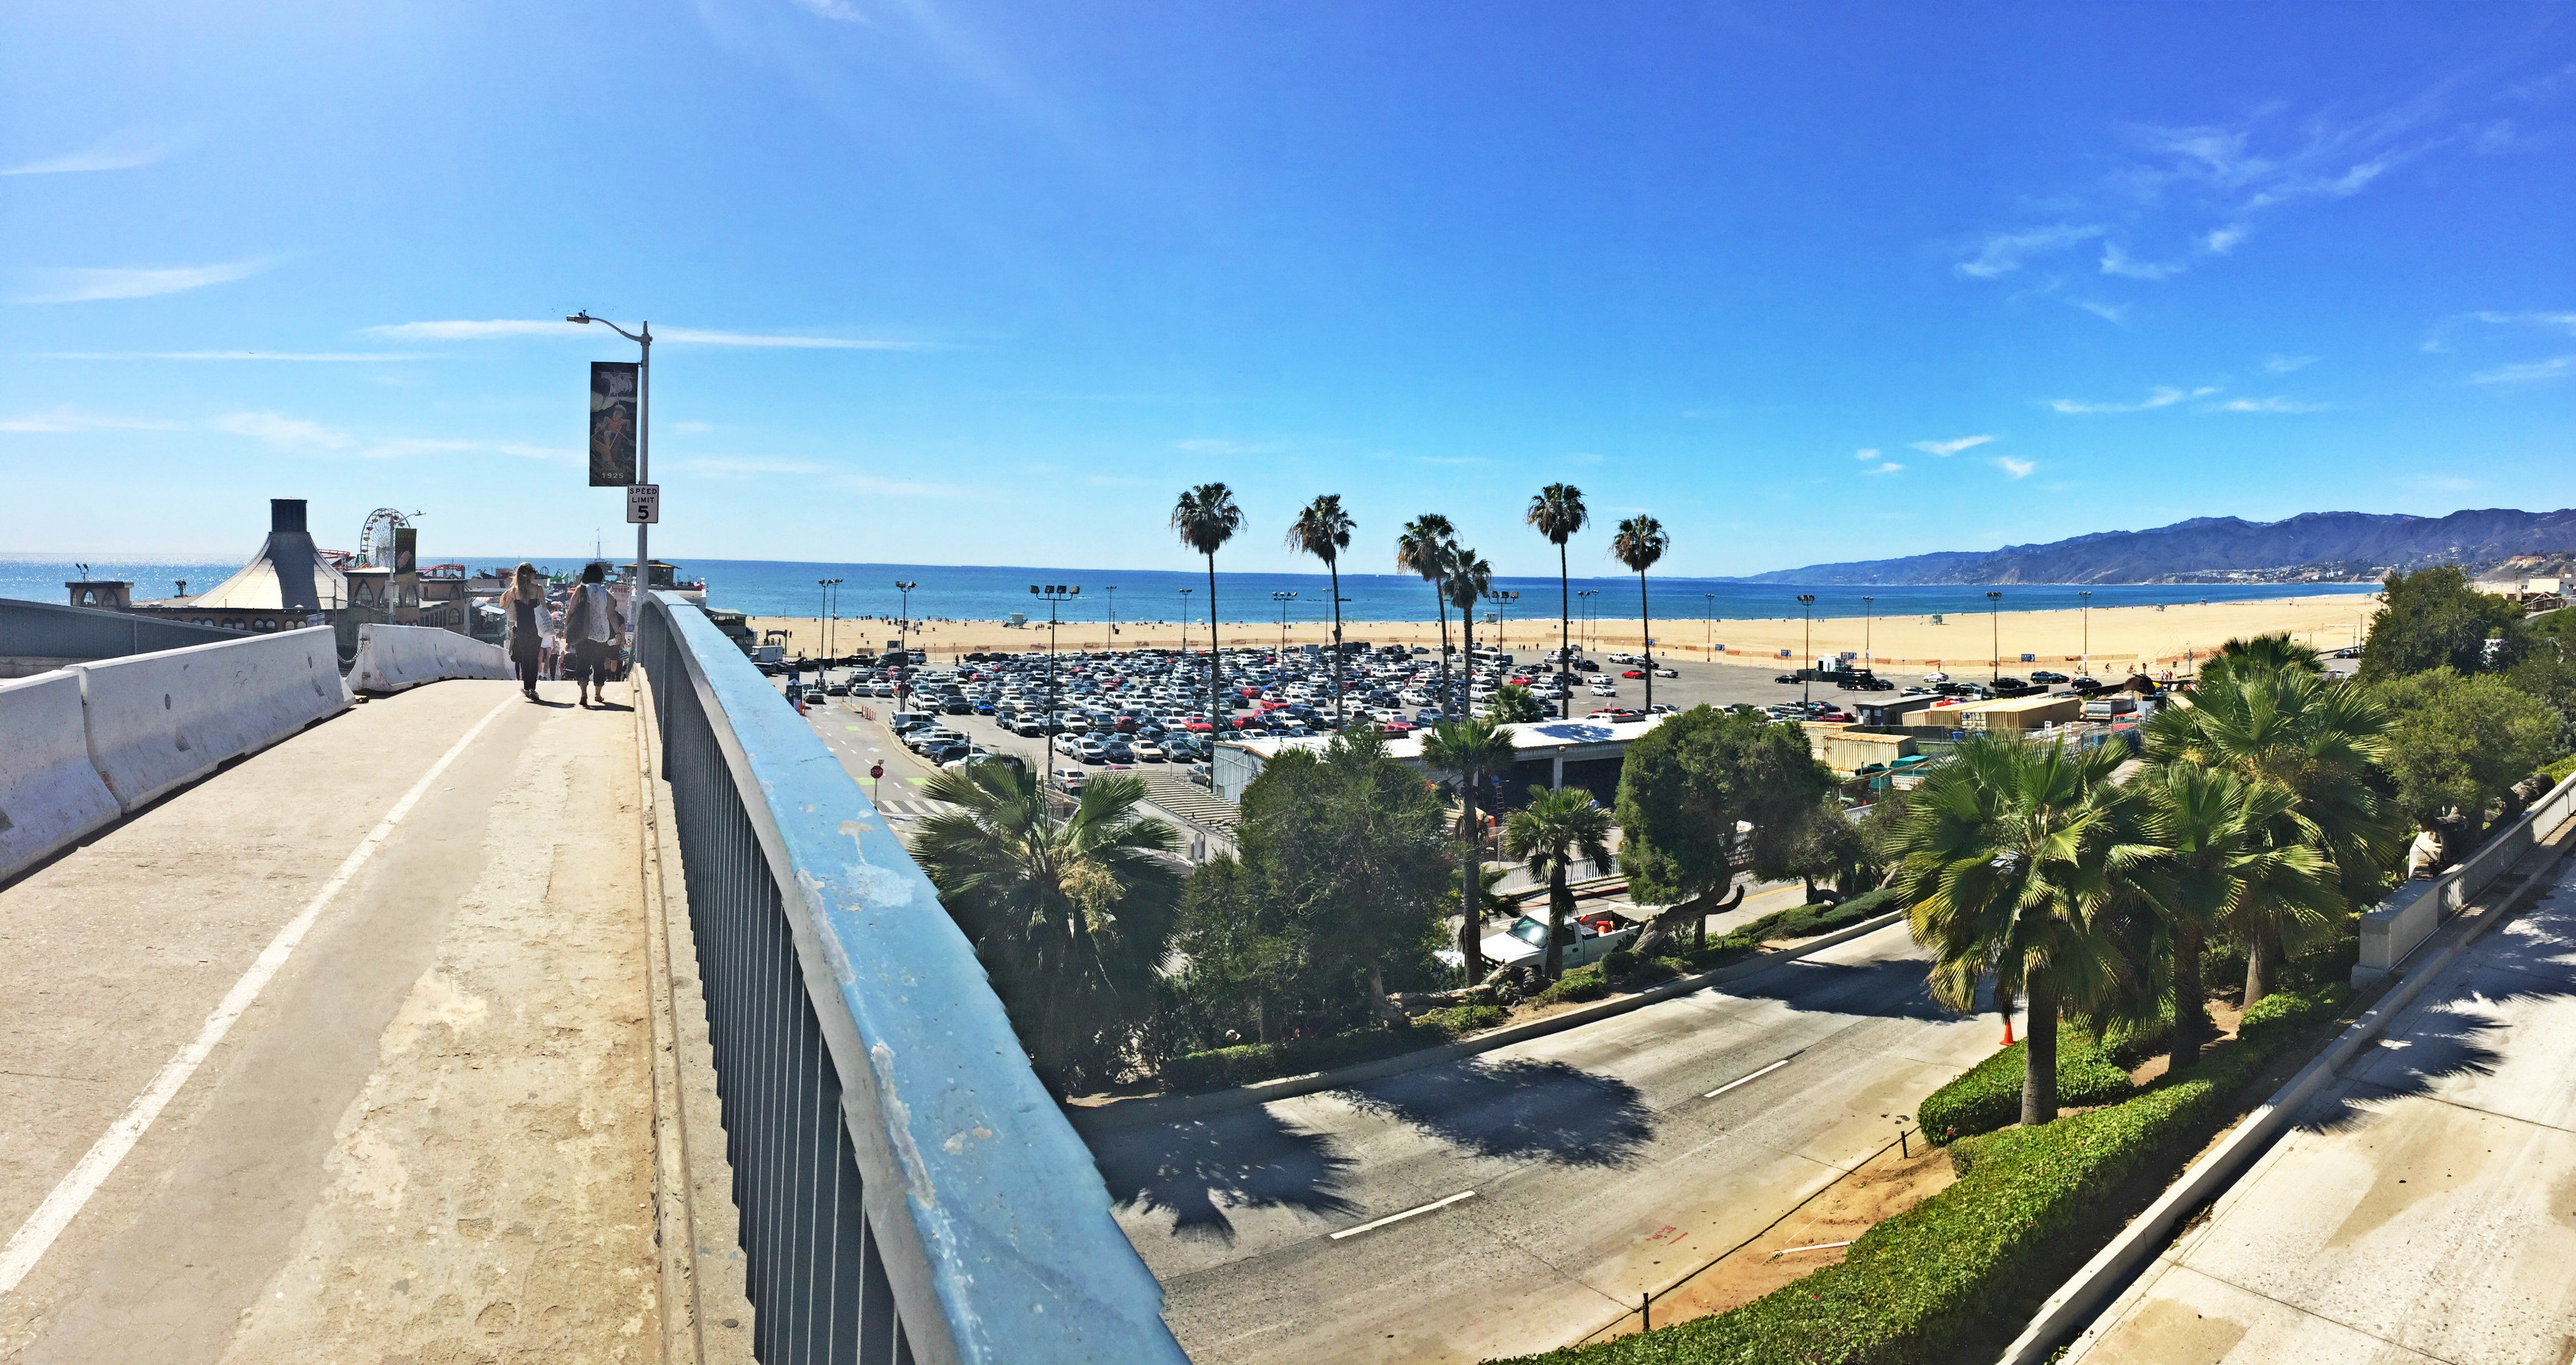 【携程攻略】洛杉矶市圣莫尼卡海滩景点,给自己一个下午的时间,喝杯